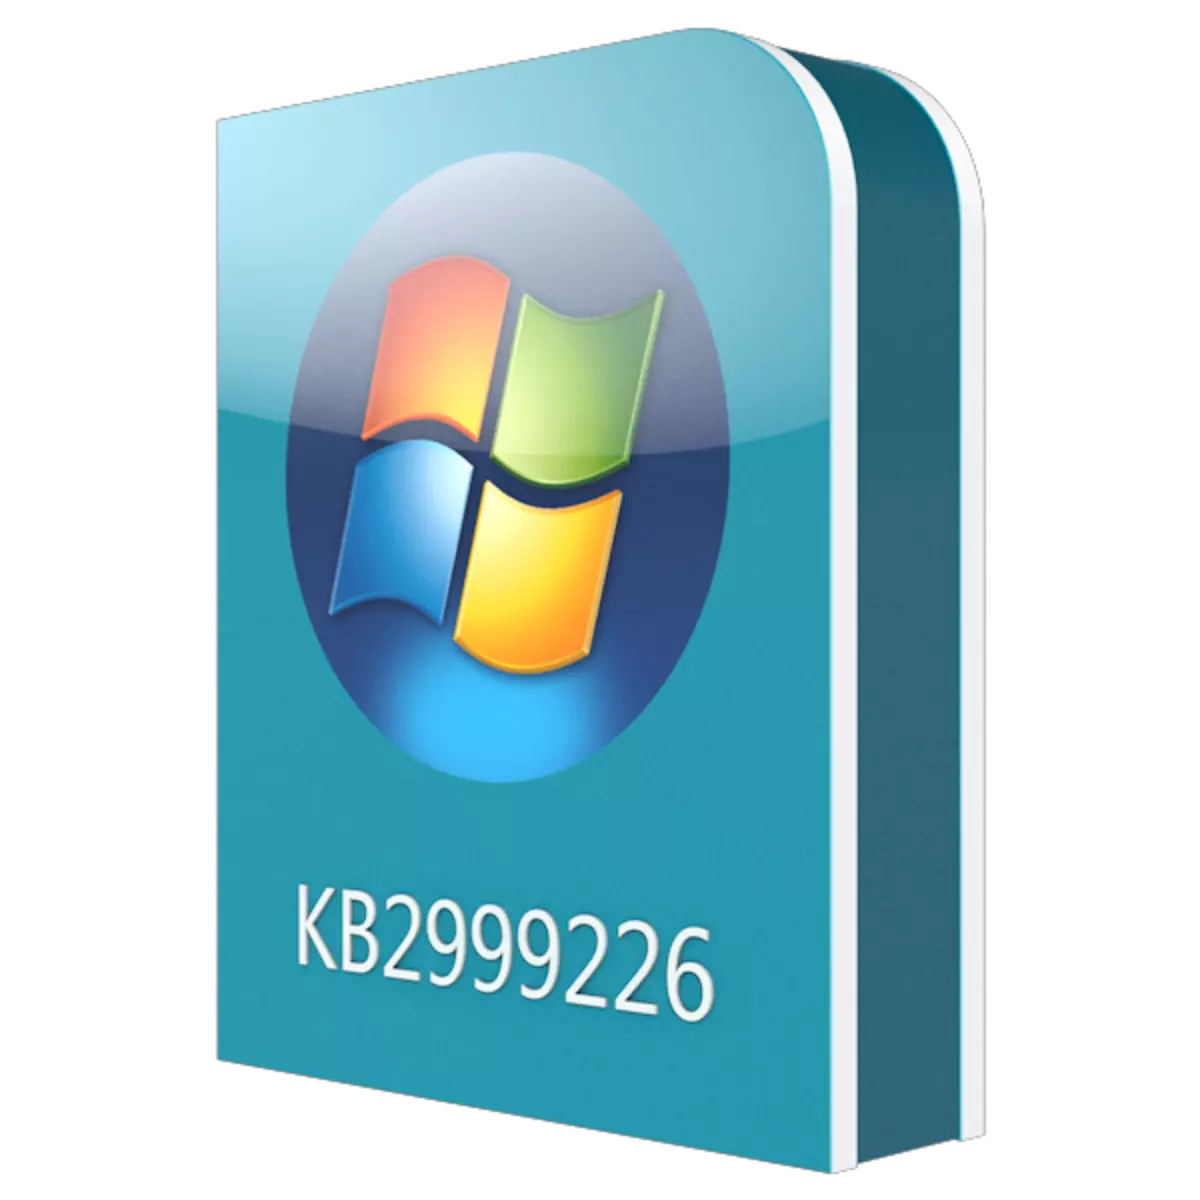 Aflaai update kb2999226 vir Windows 7